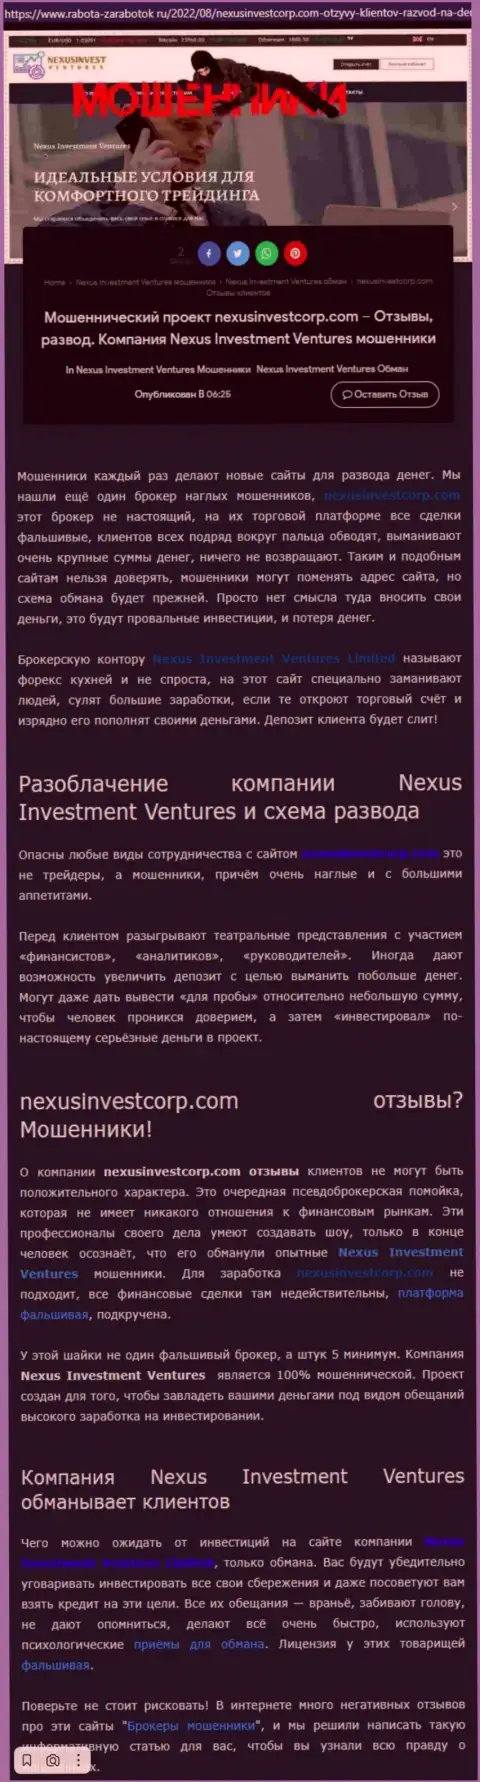 Если же нет желания стать еще одной жертвой NexusInvestCorp Com, бегите от них как можно дальше (обзор)